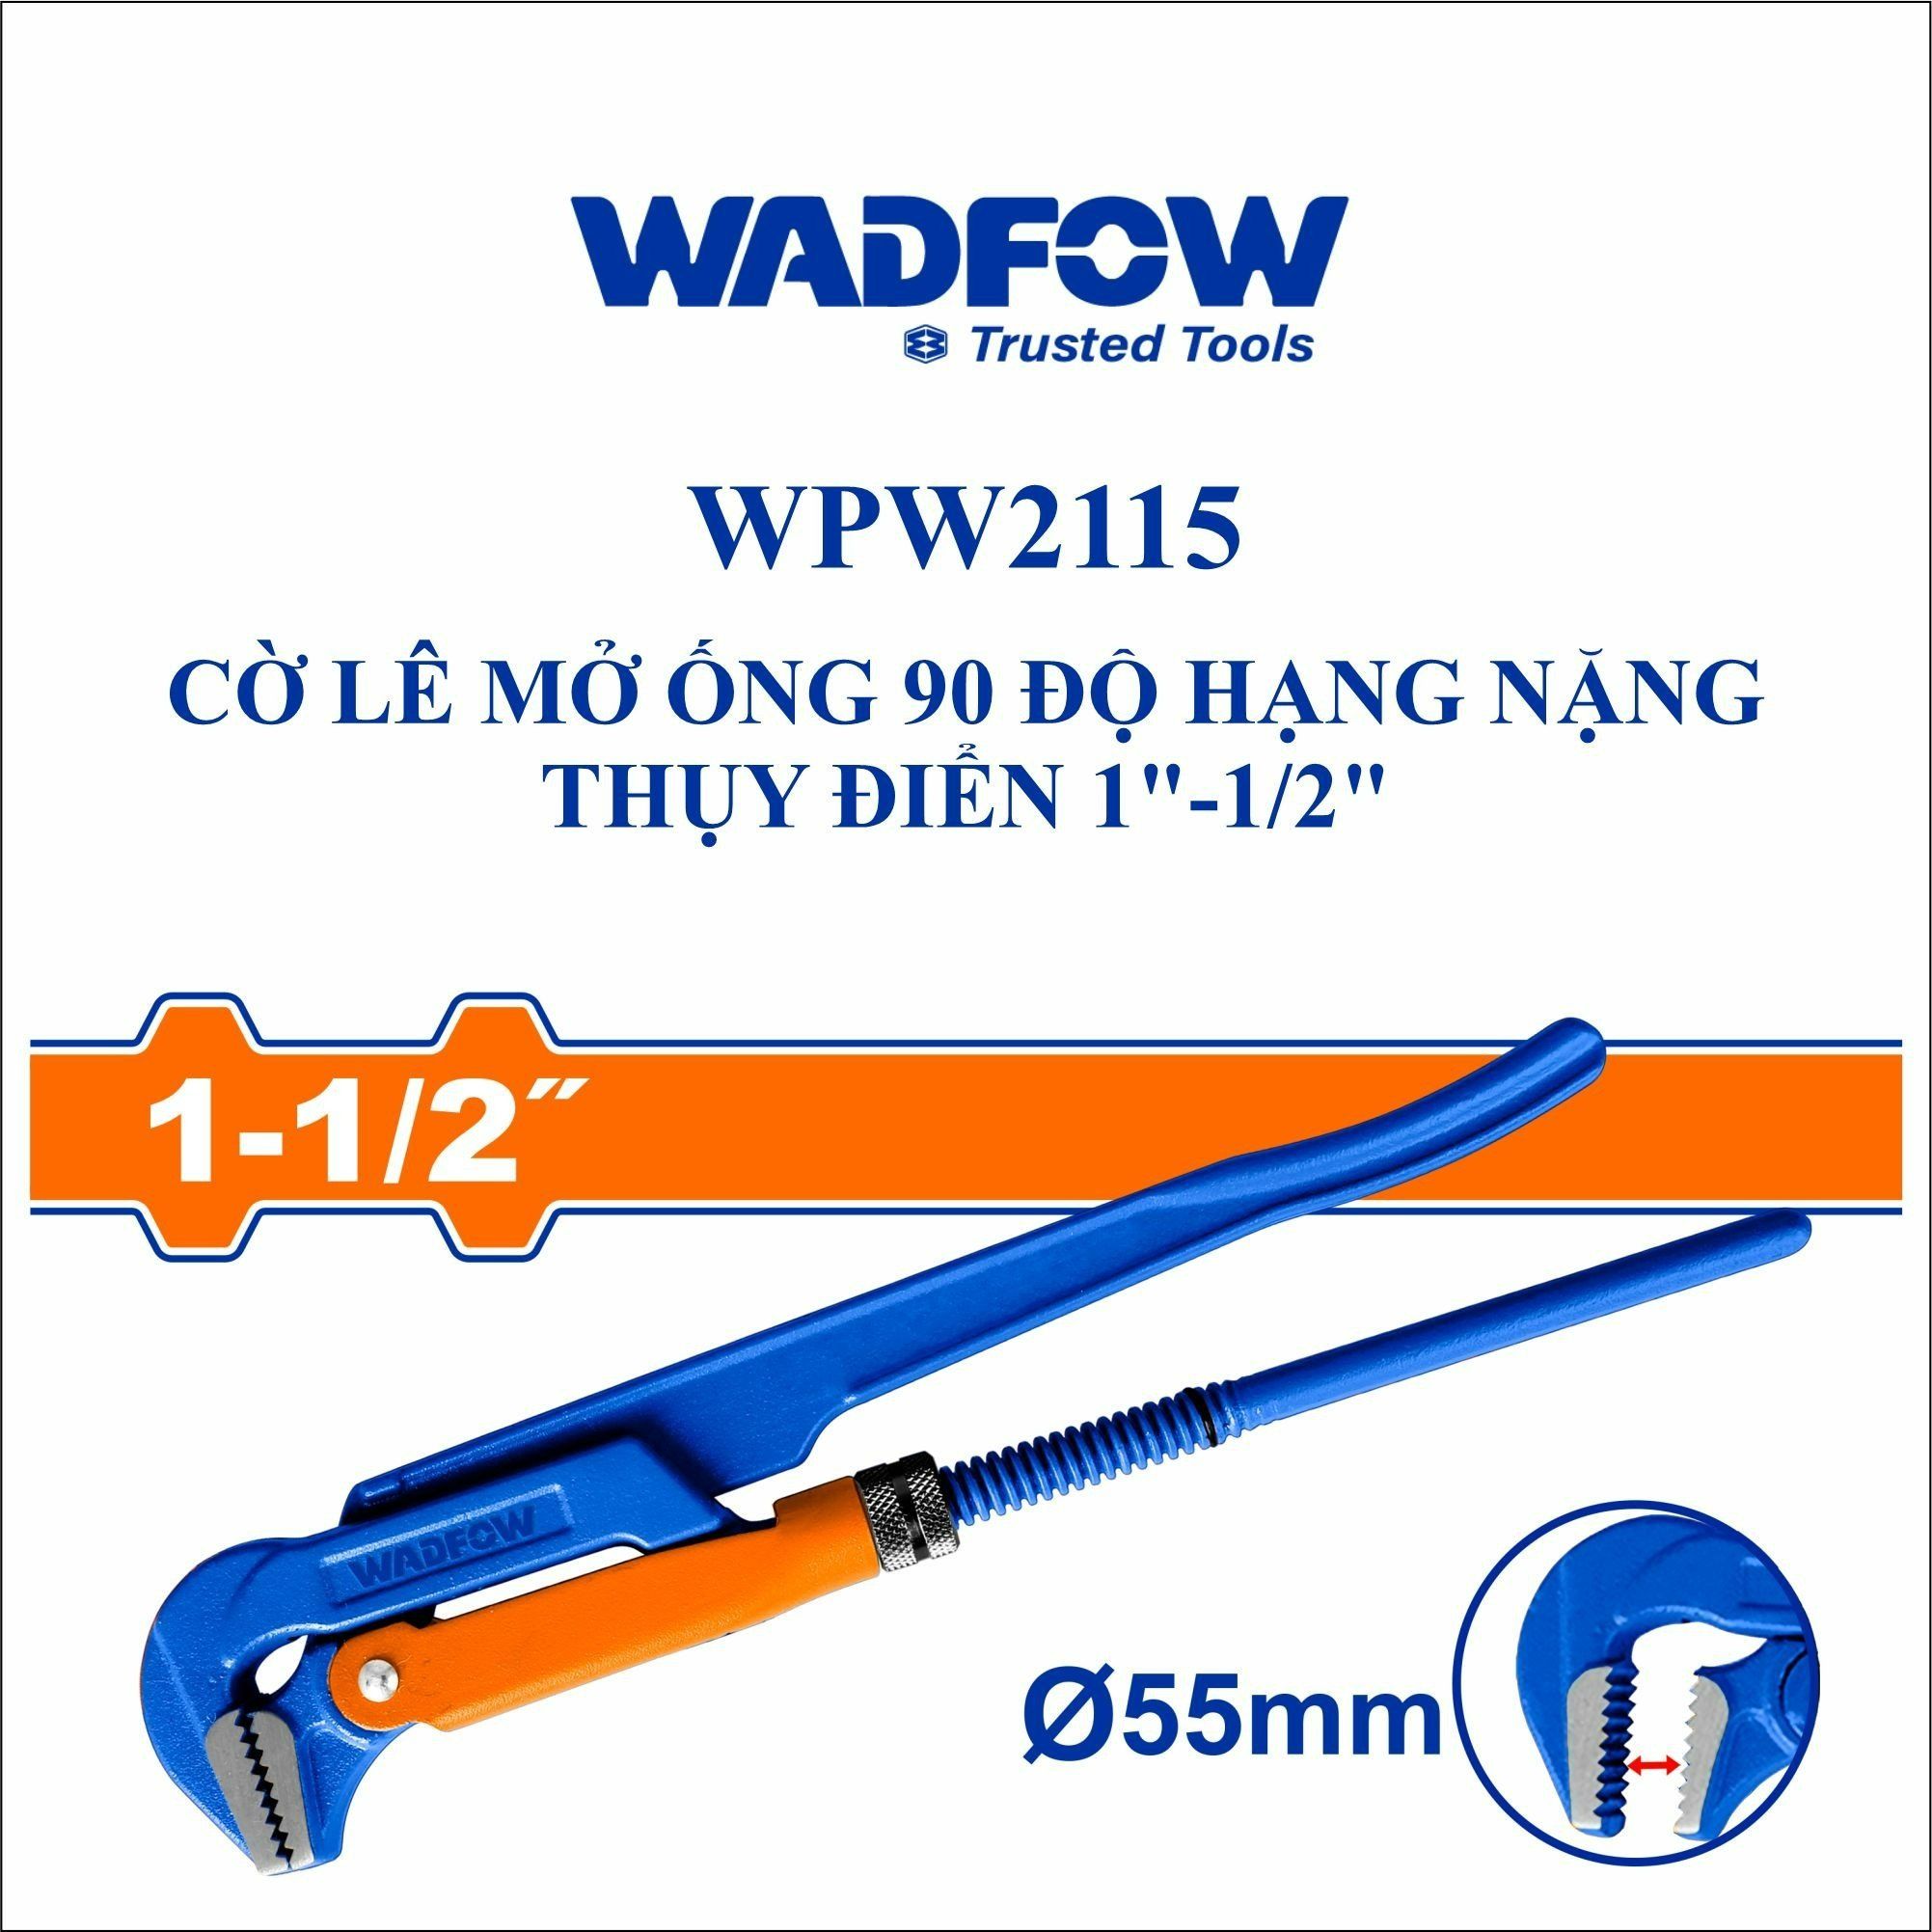  Cờ lê mở ống 90 độ hạng nặng Thụy Điển 1 Inch-1/2 Inch WADFOW WPW2115 